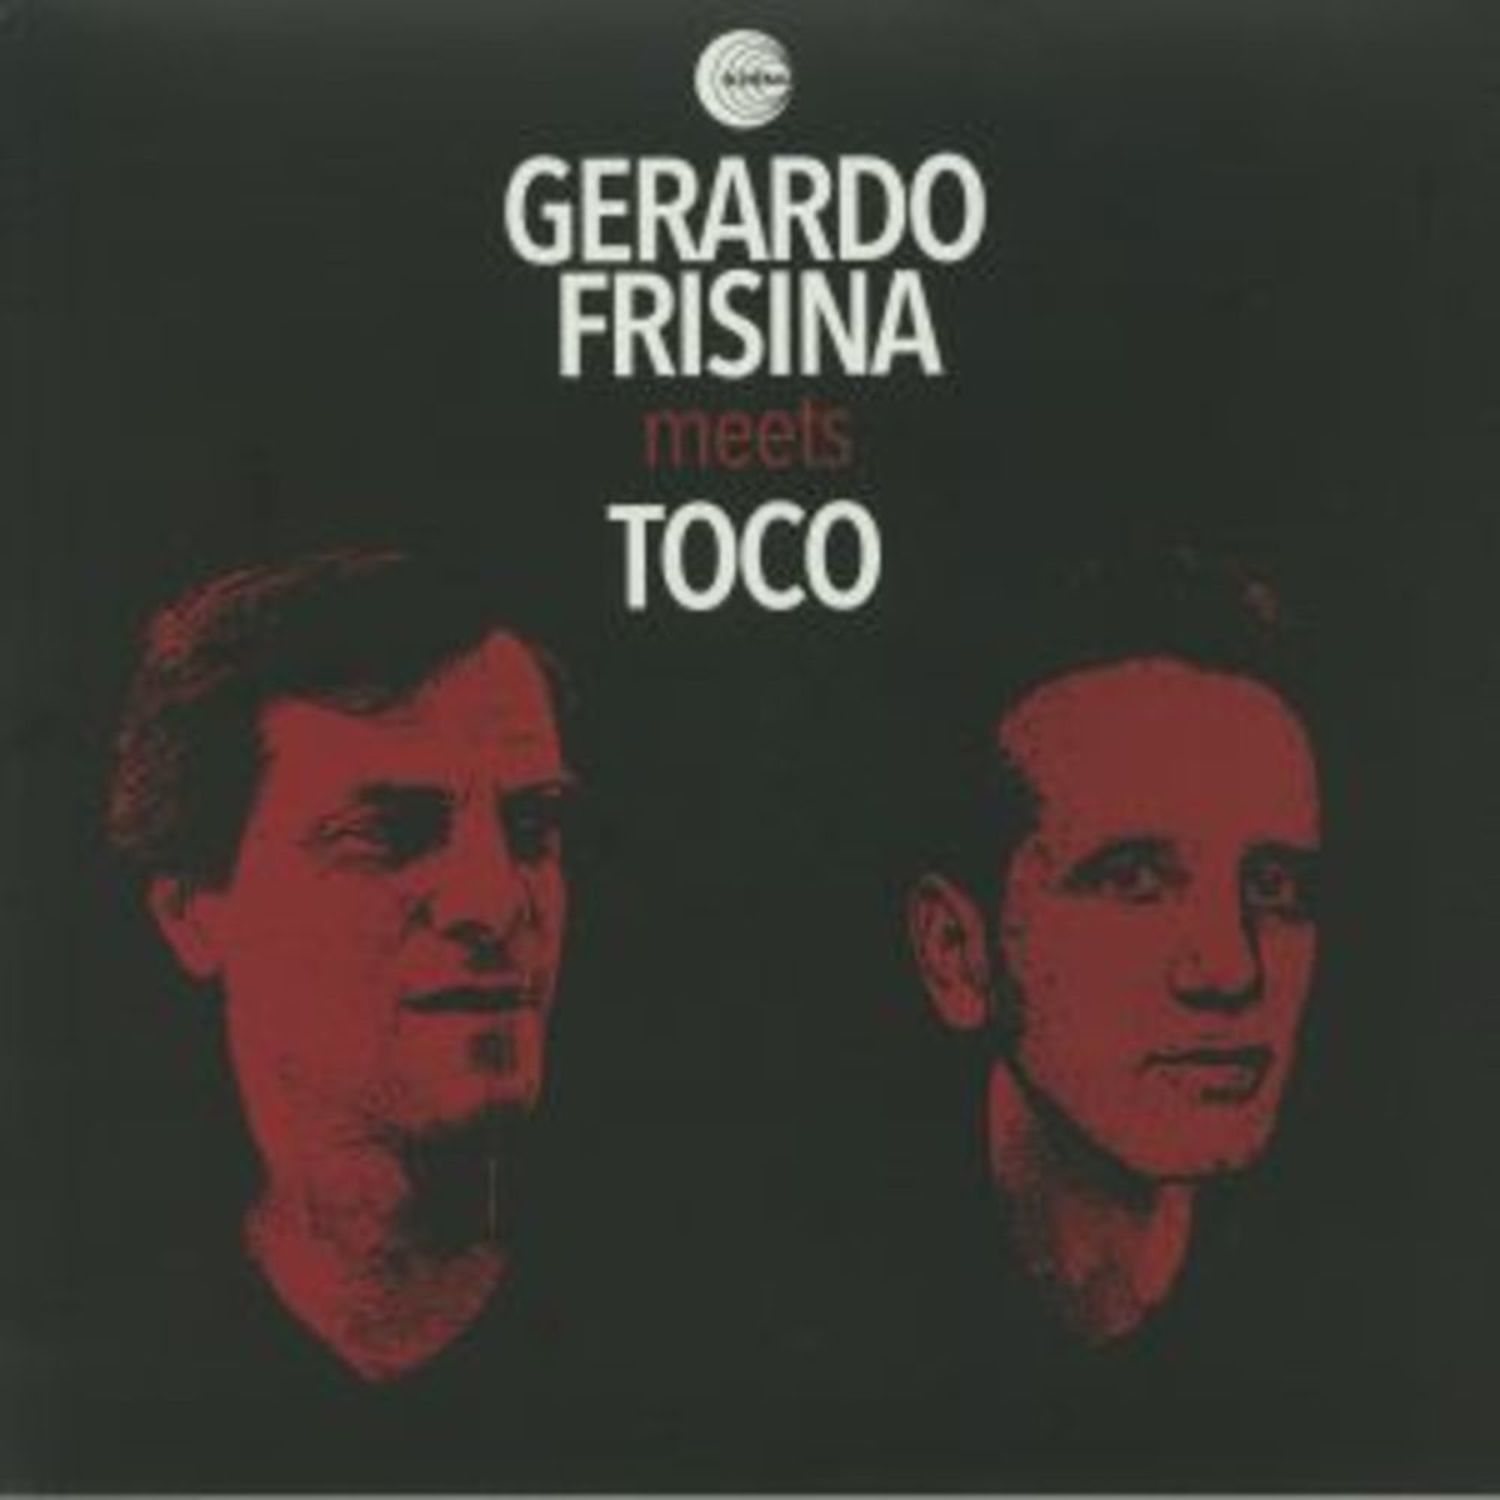 Gerardo Frisina - GERARDO FRISINA MEETS TOCO